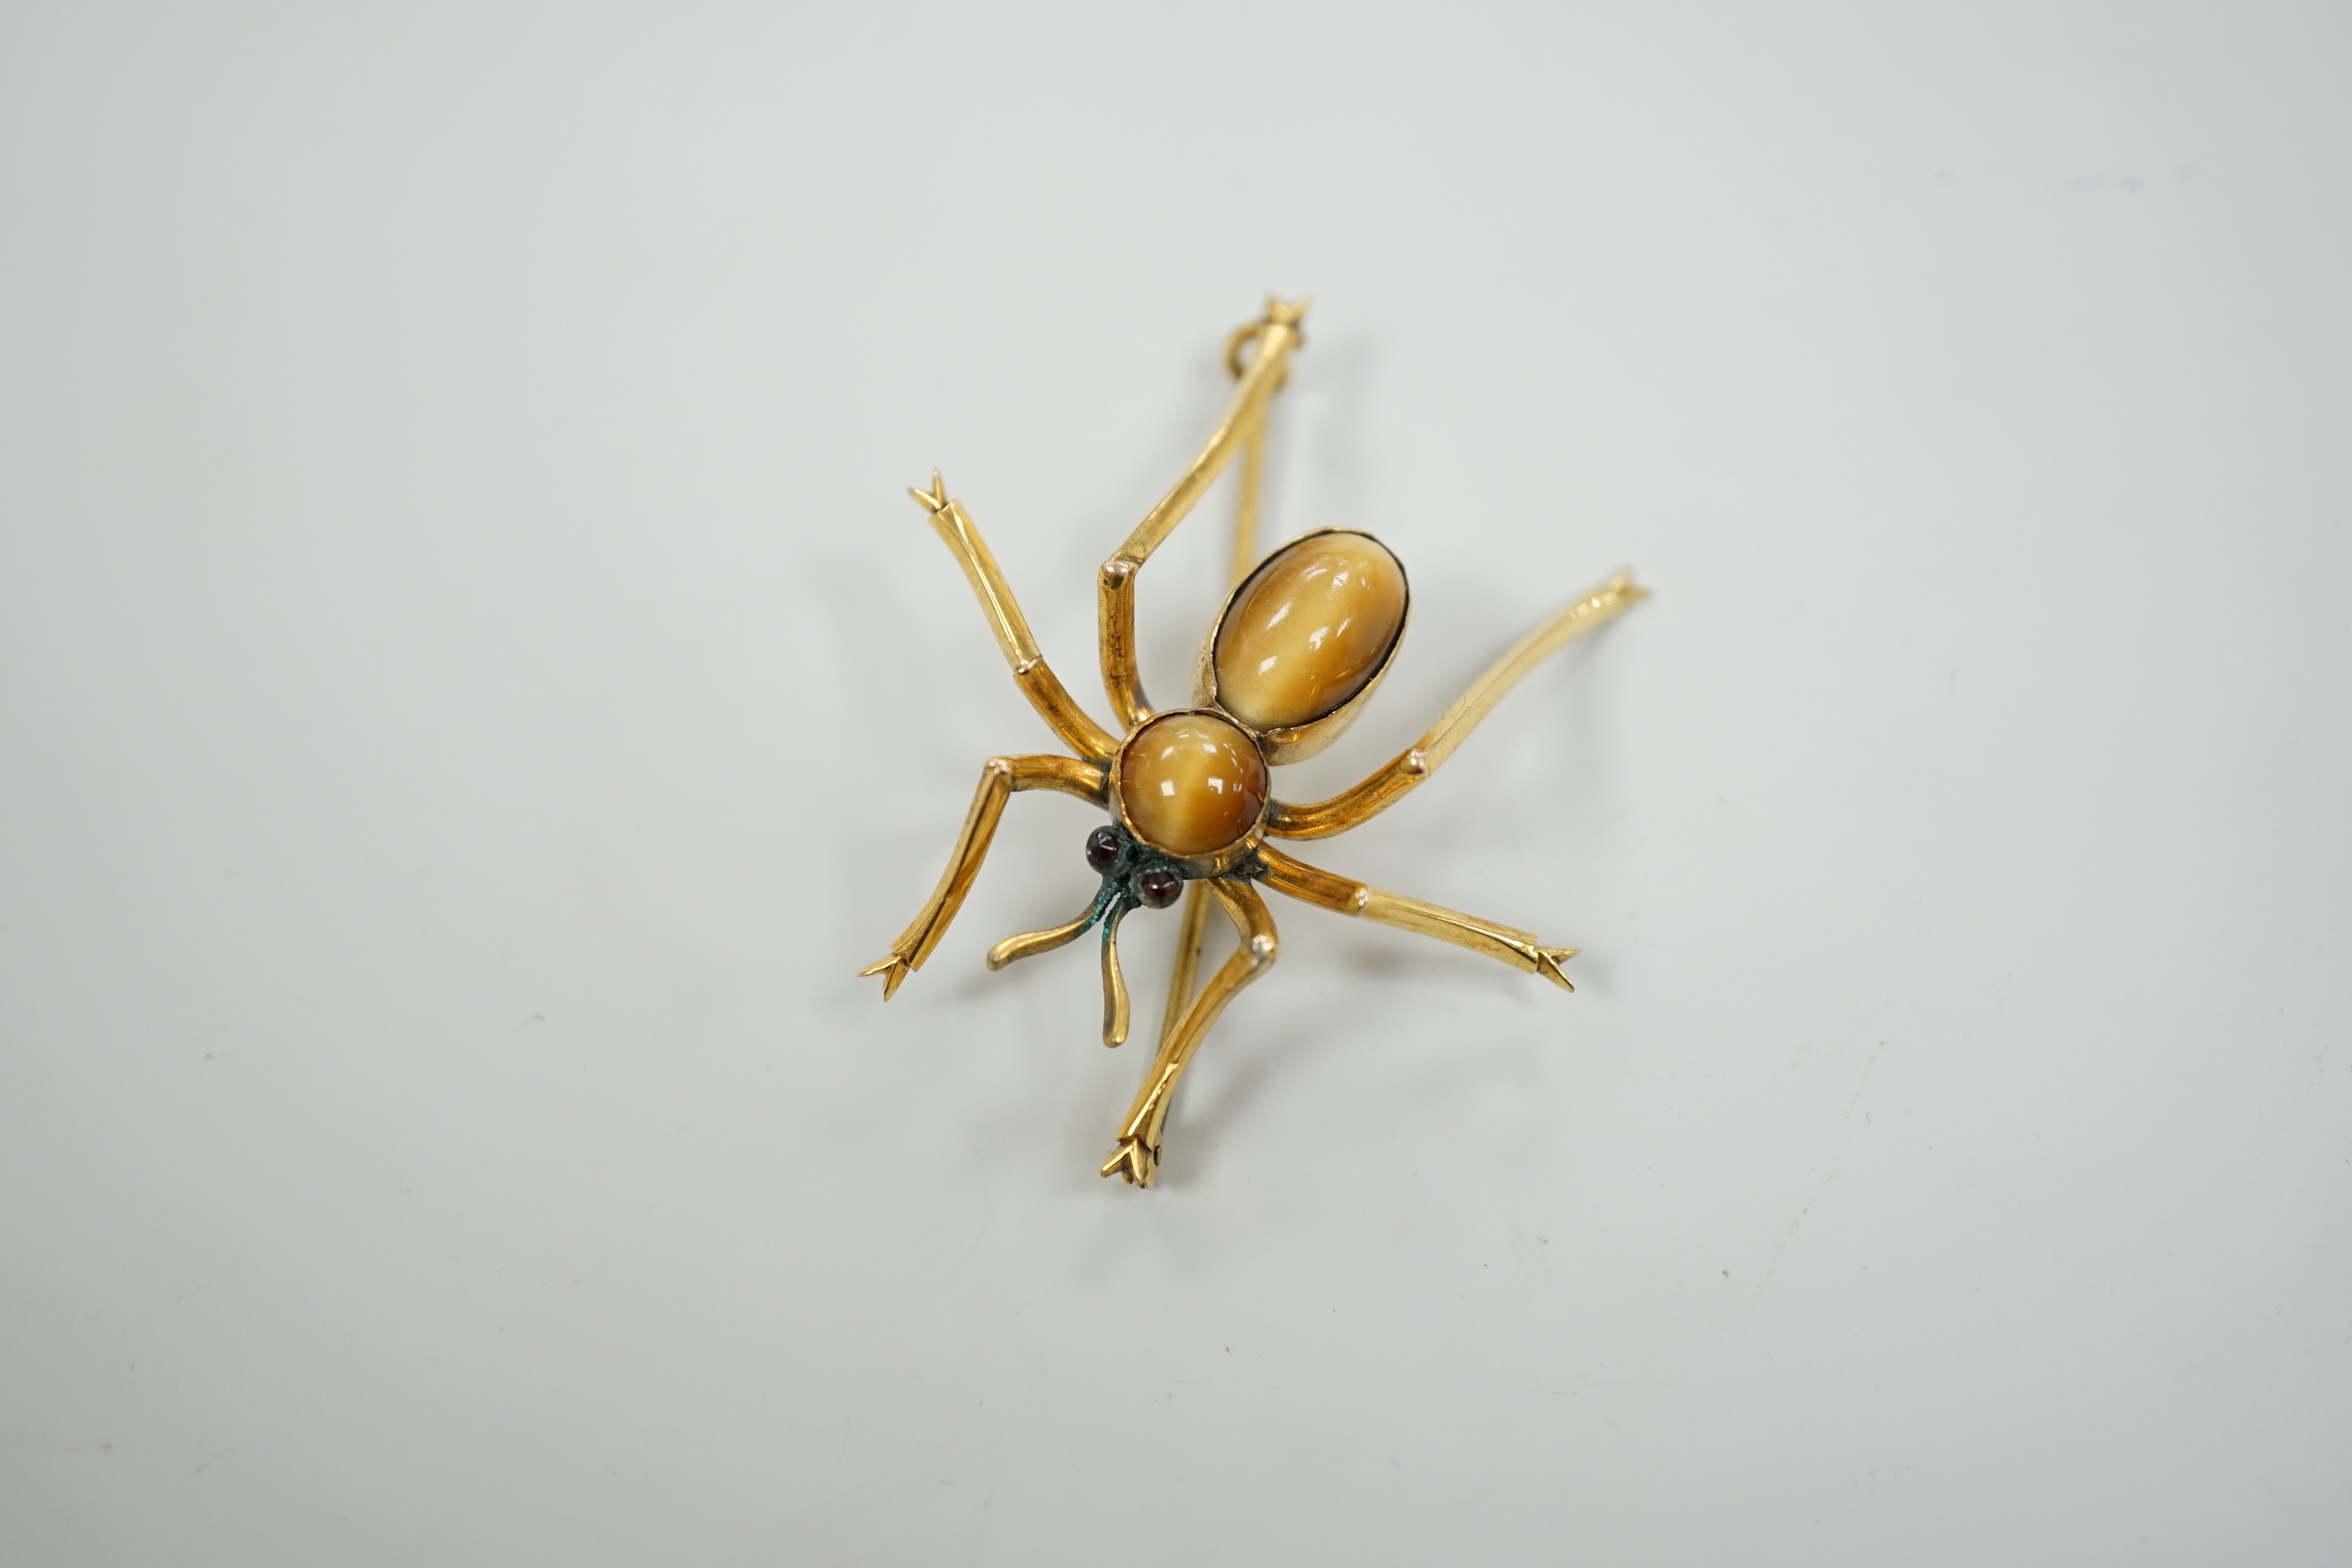 A yellow metal, tiger's eye quartz and gem set spider brooch, 41mm, gross weight 6.1 grams.